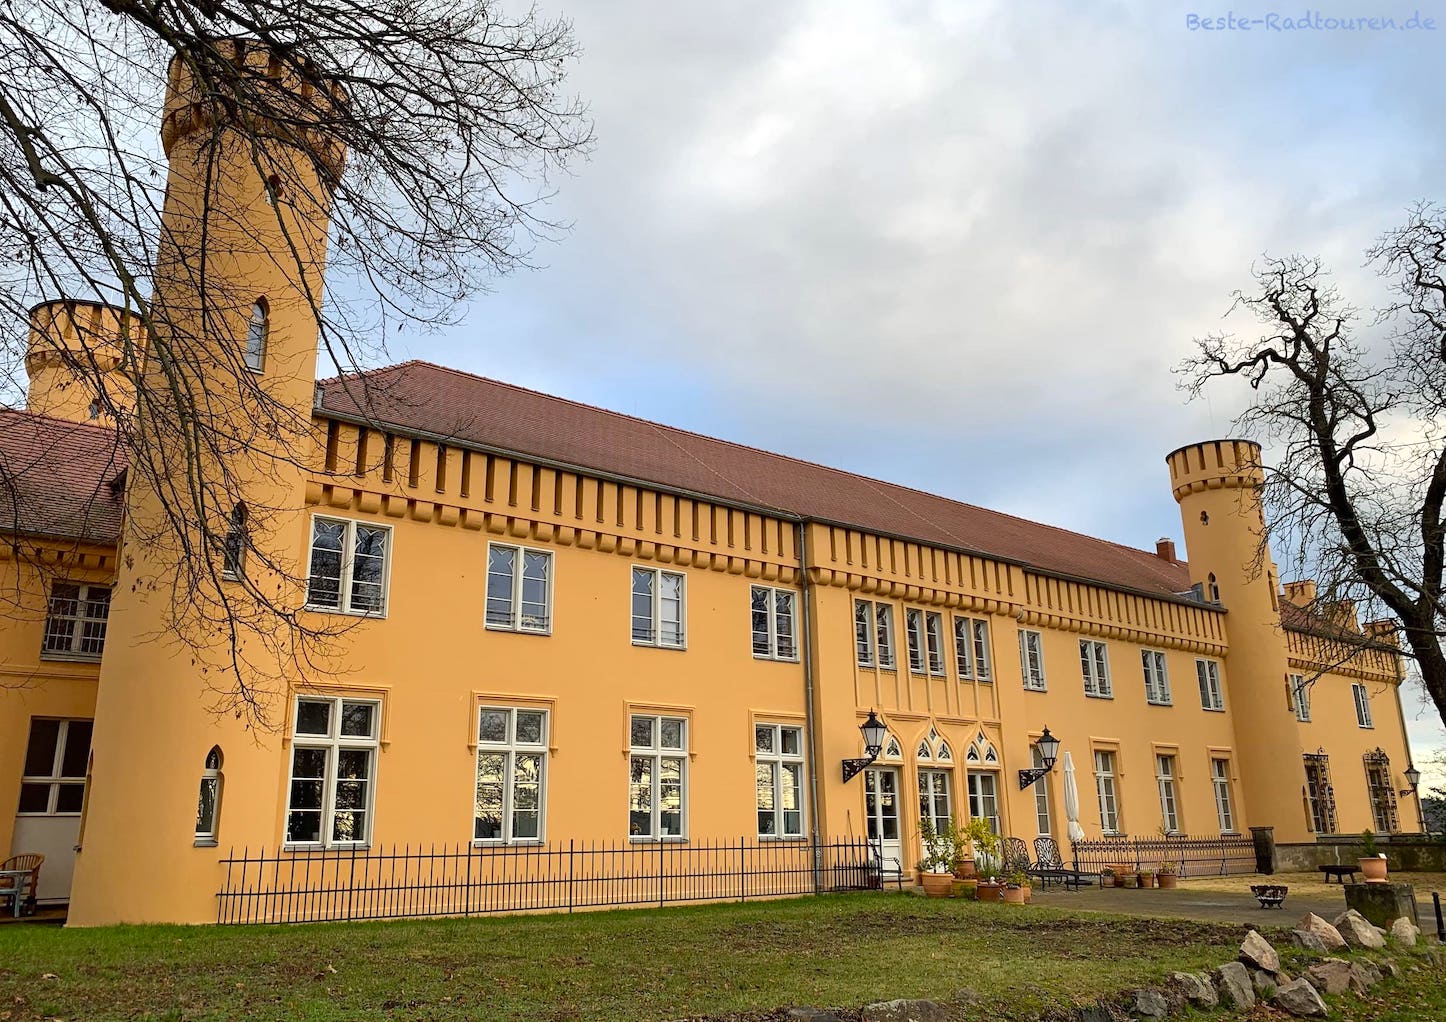 Vorderseite von Schloss oder Gutshaus Petzow, Potsdam-Mittelmark